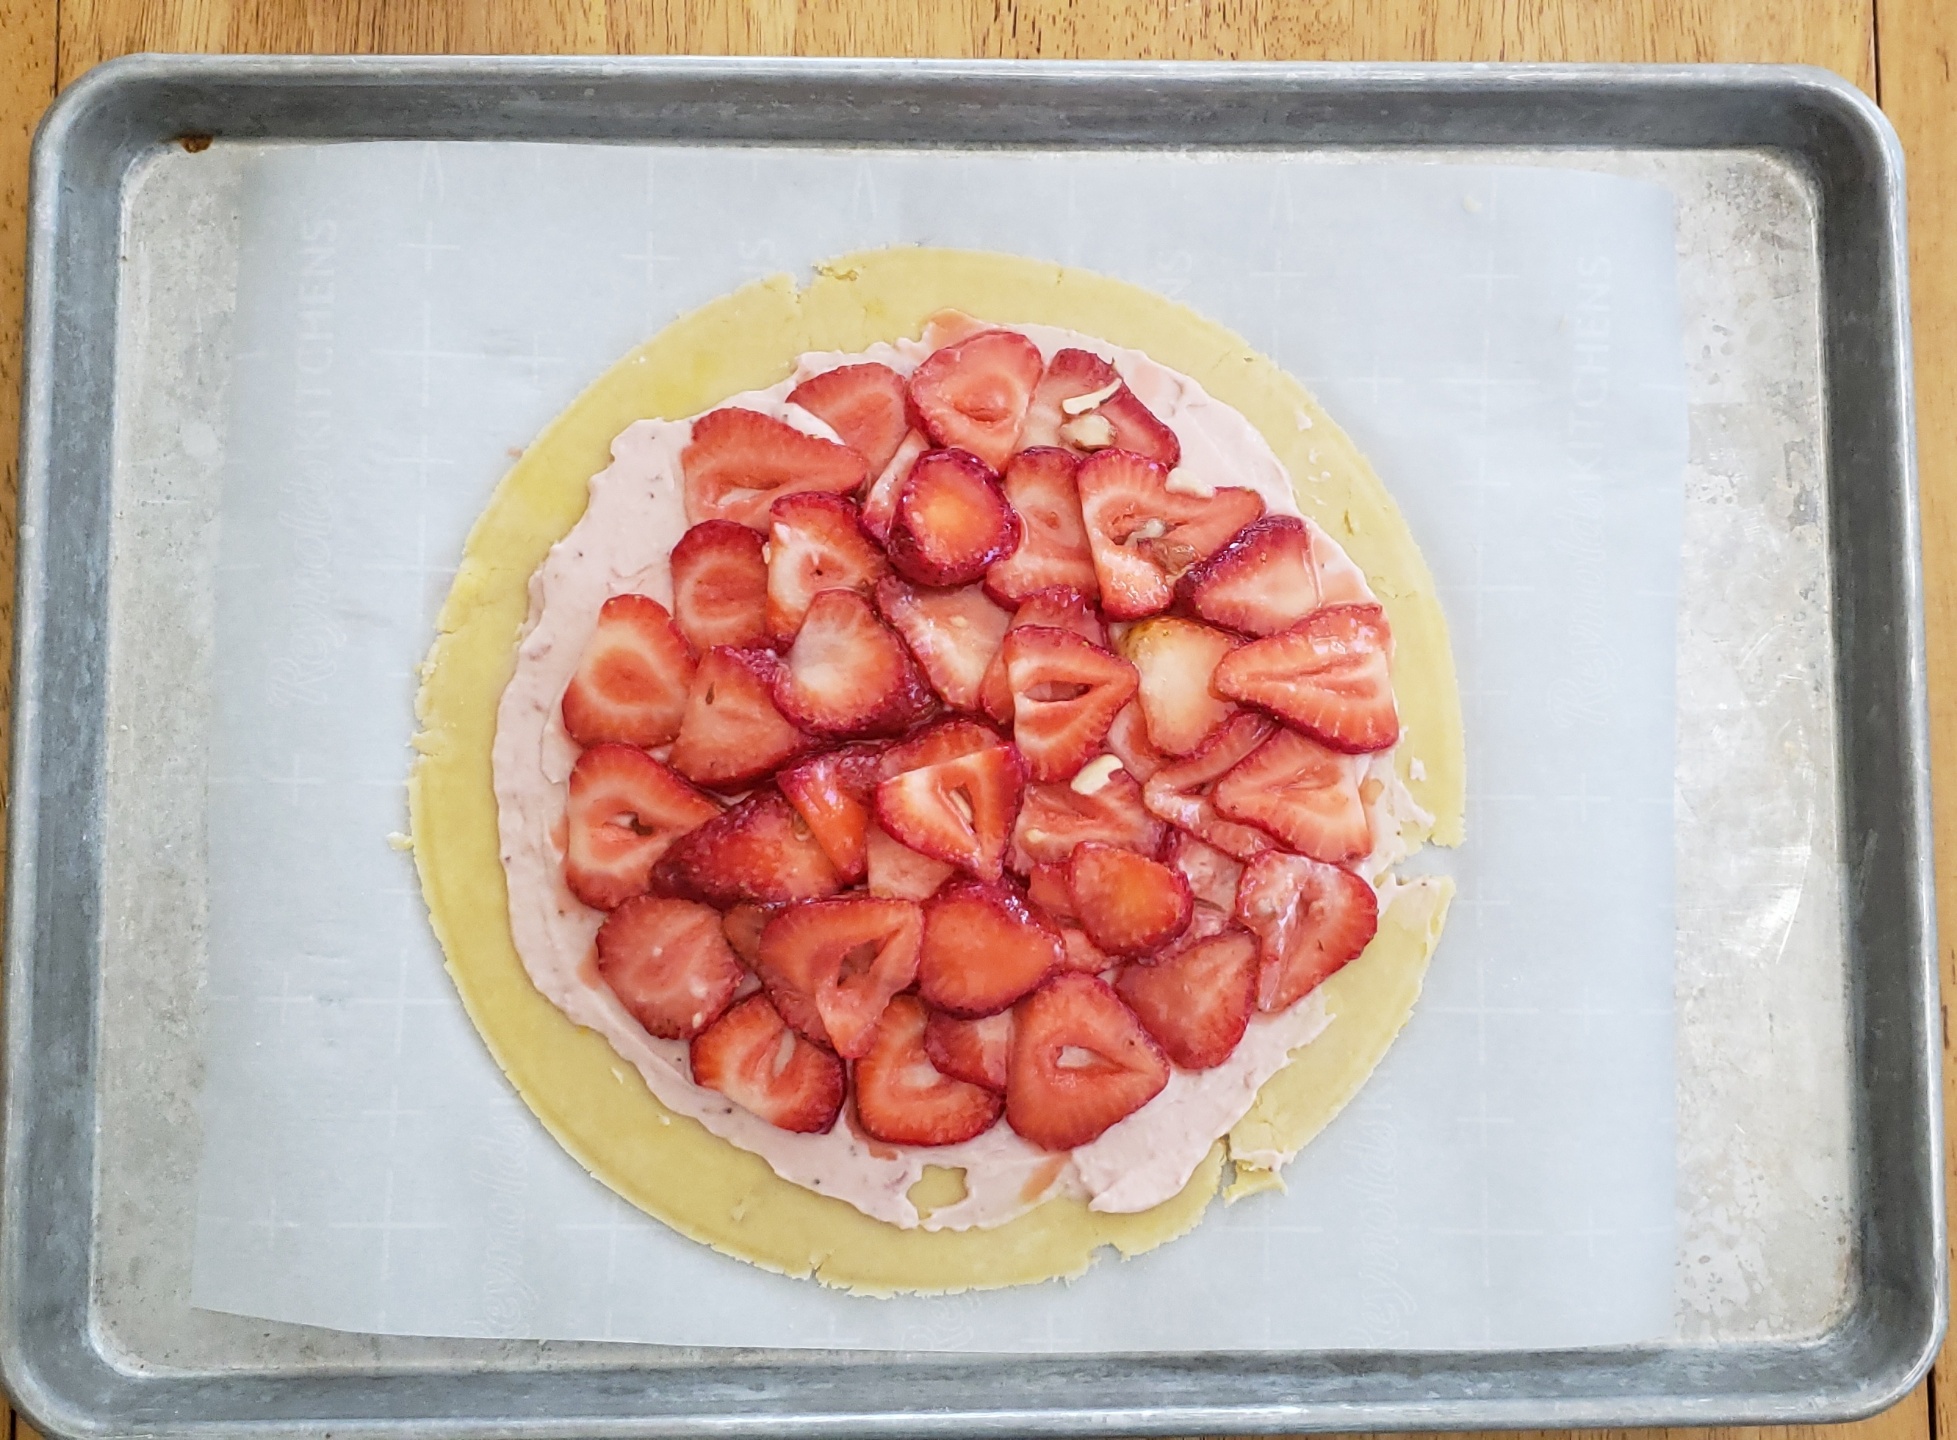 Strawberries on top of Pie crust